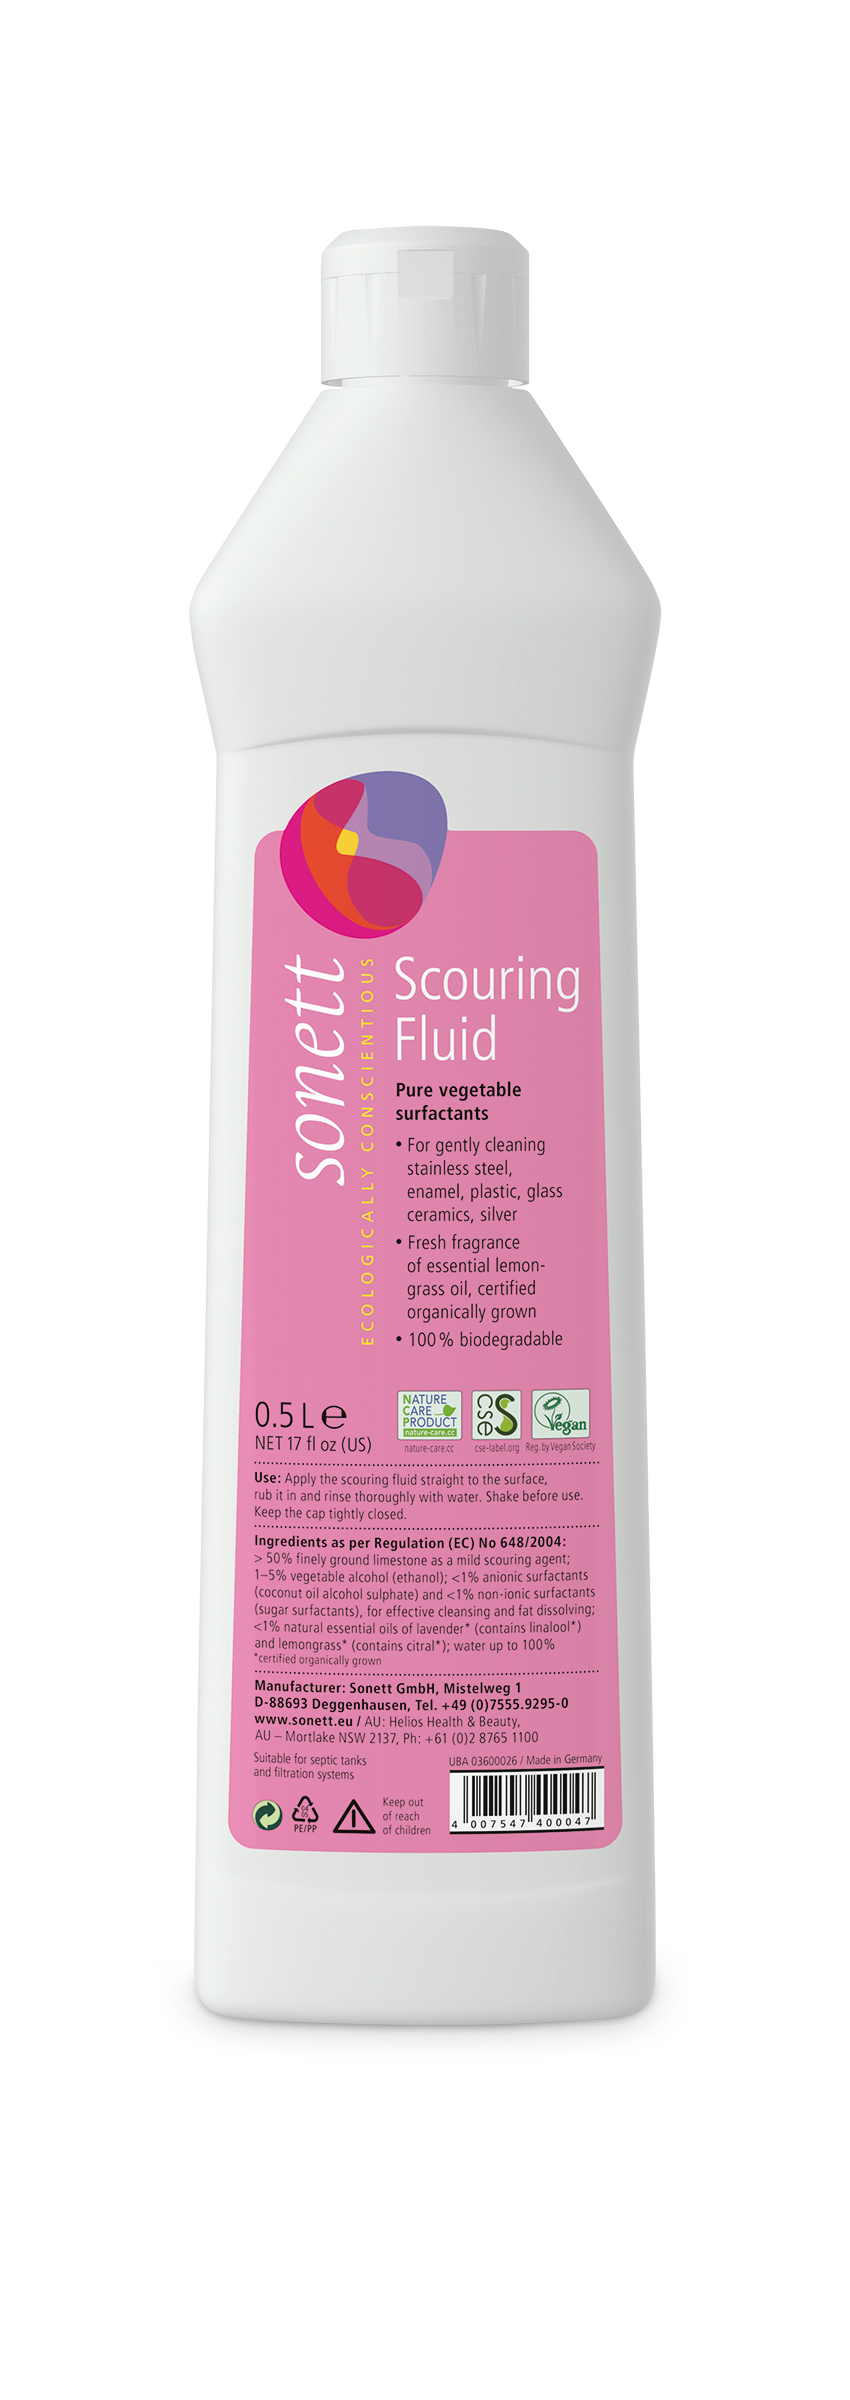 Sonett Scouring Fluid - 500ml